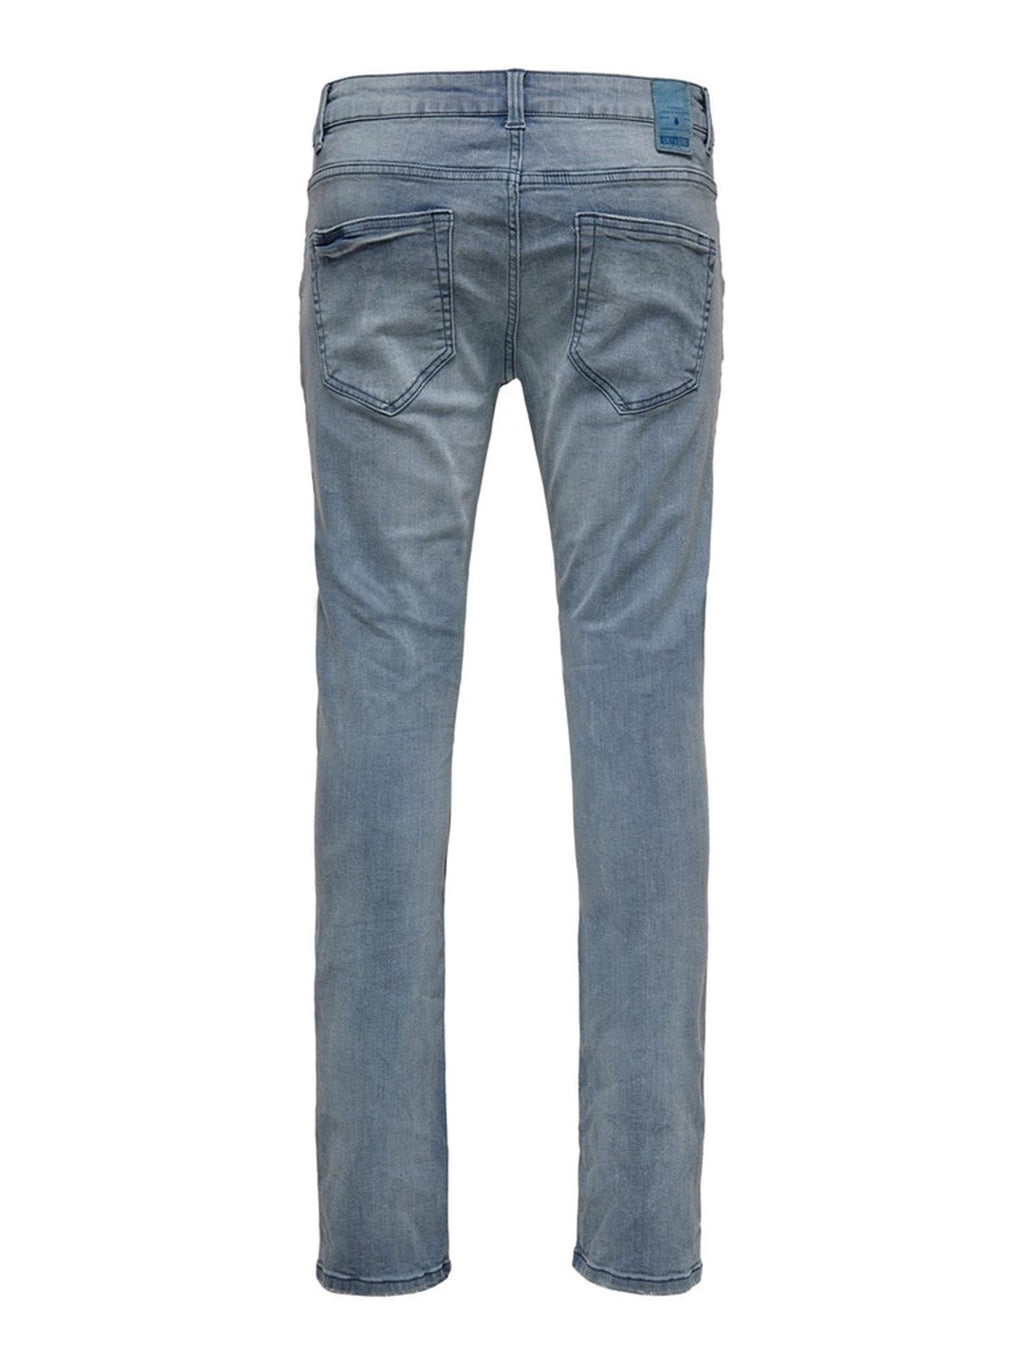 Webstuhl Jeans PK3627 - grauer Denim